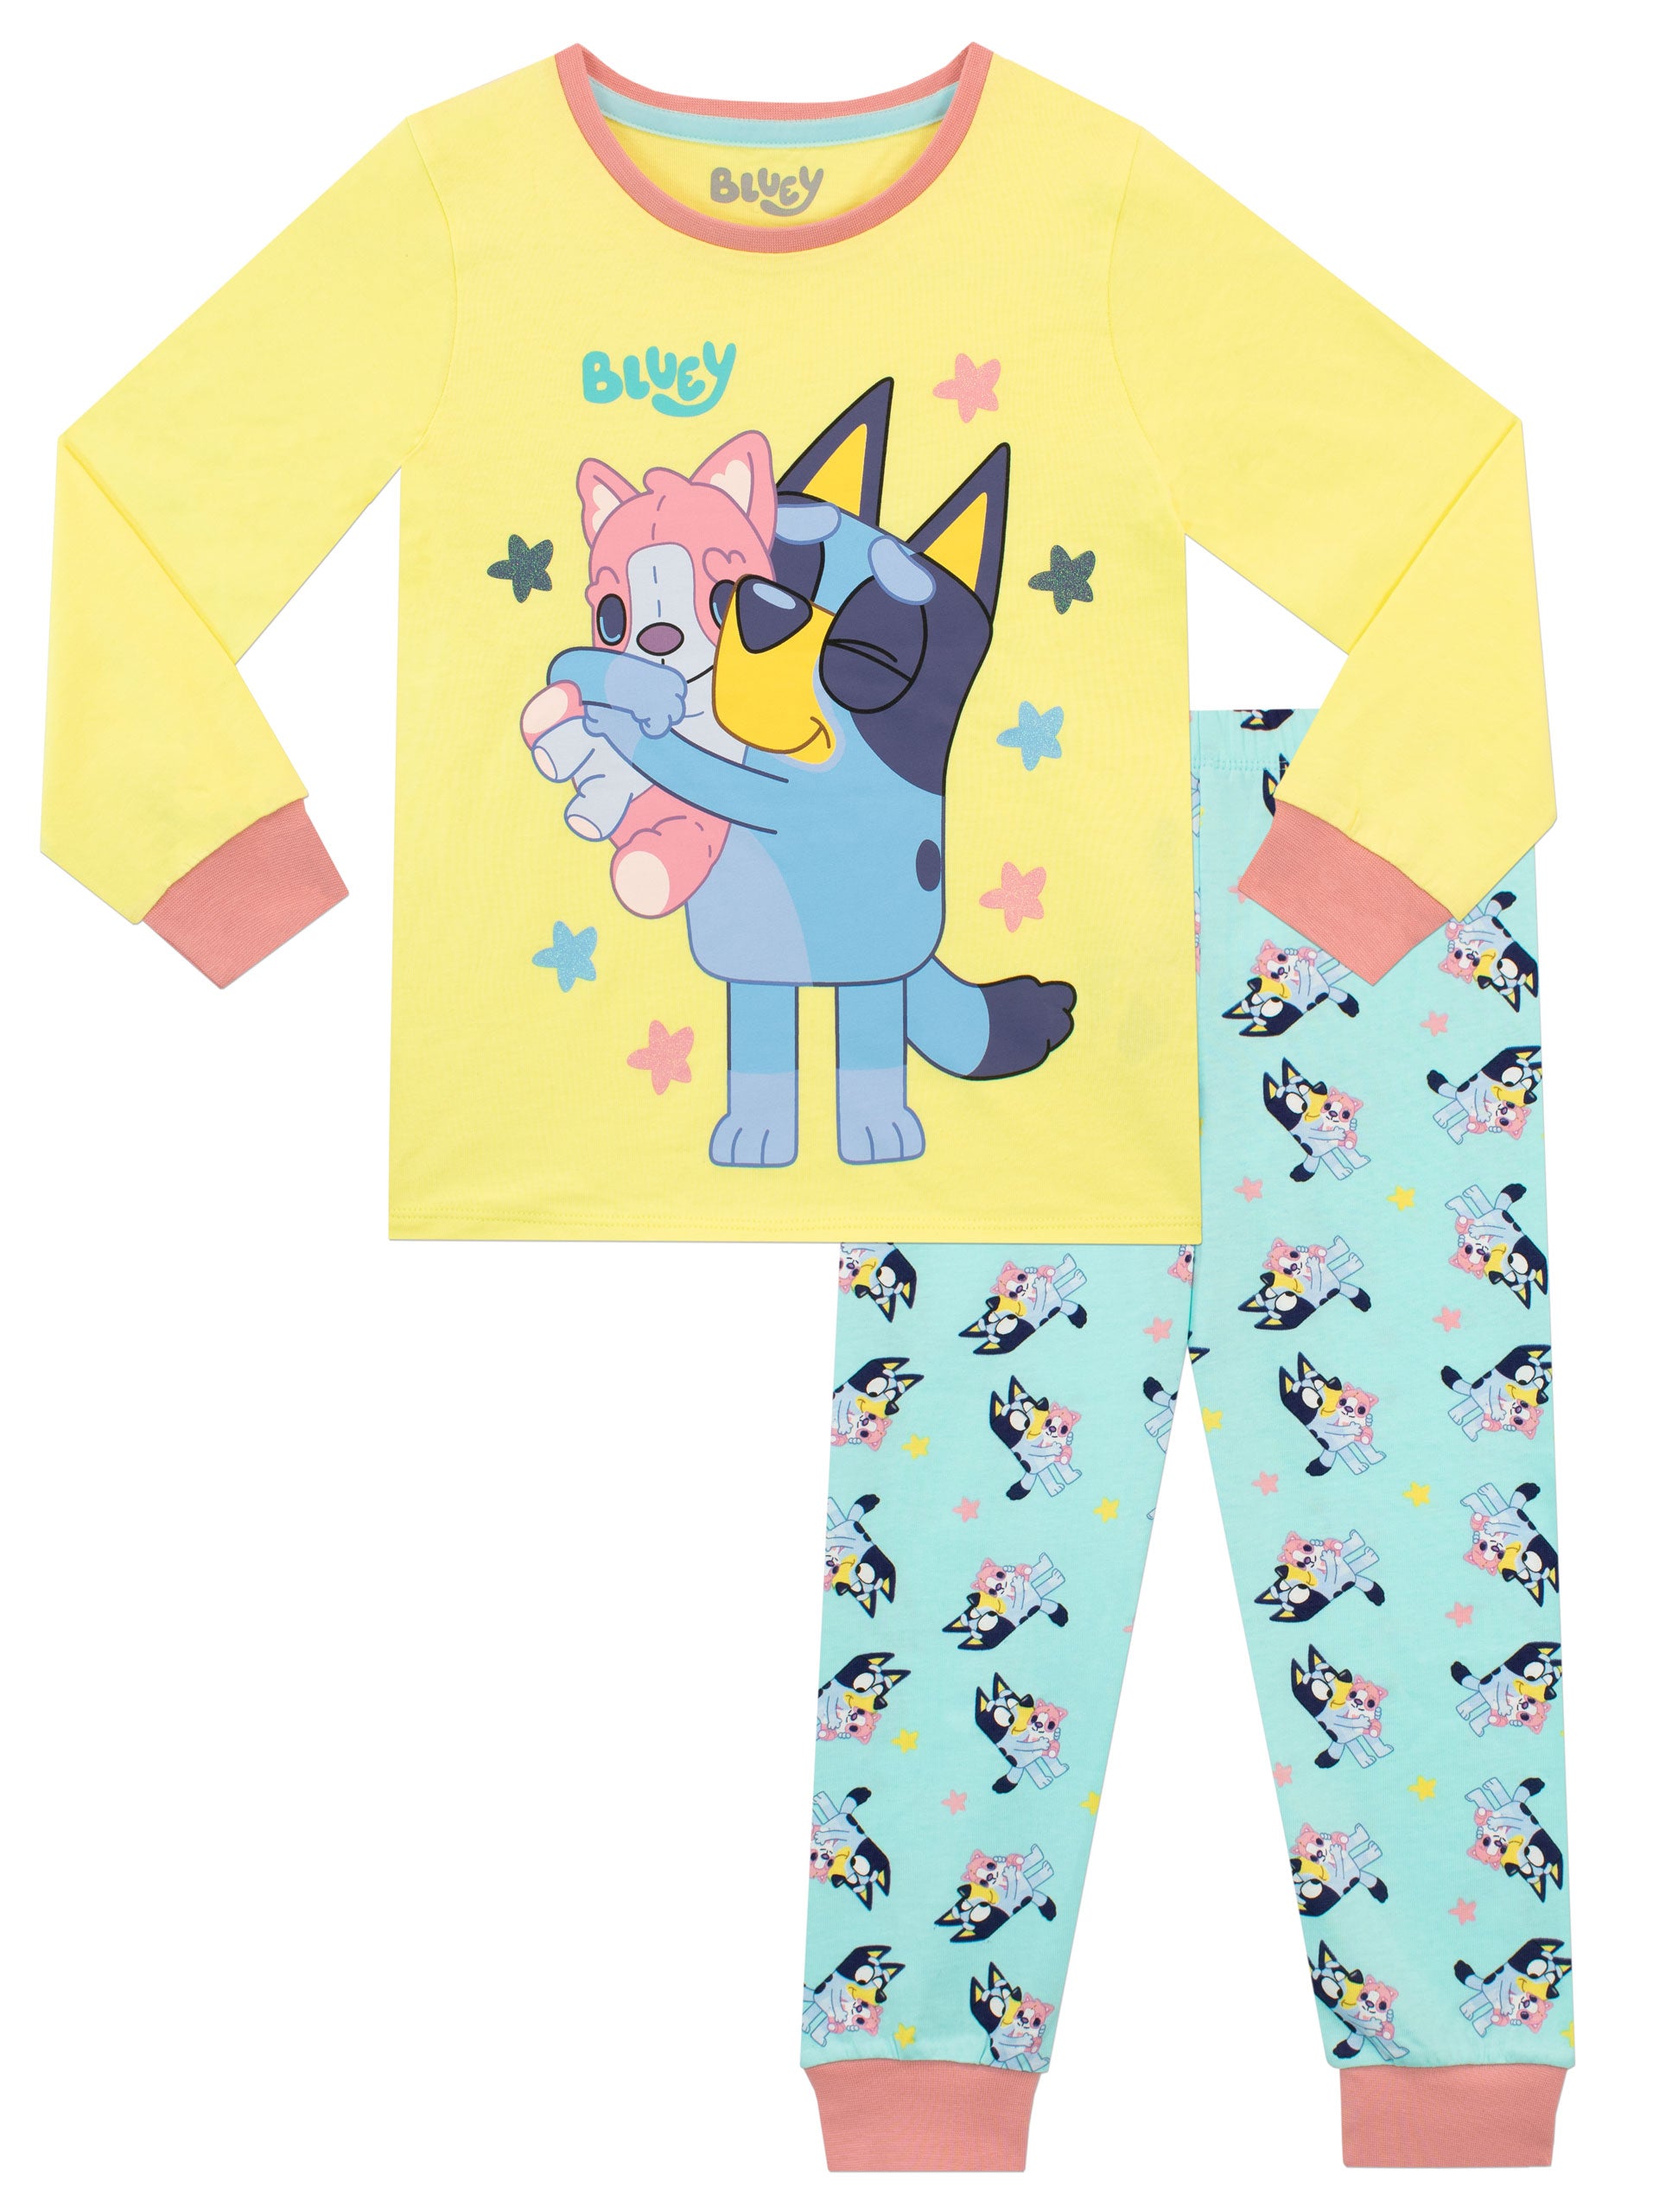 Bluey Pajamas Set Shirt Pants Toddler Boy Girl Size 2T 3T 4T